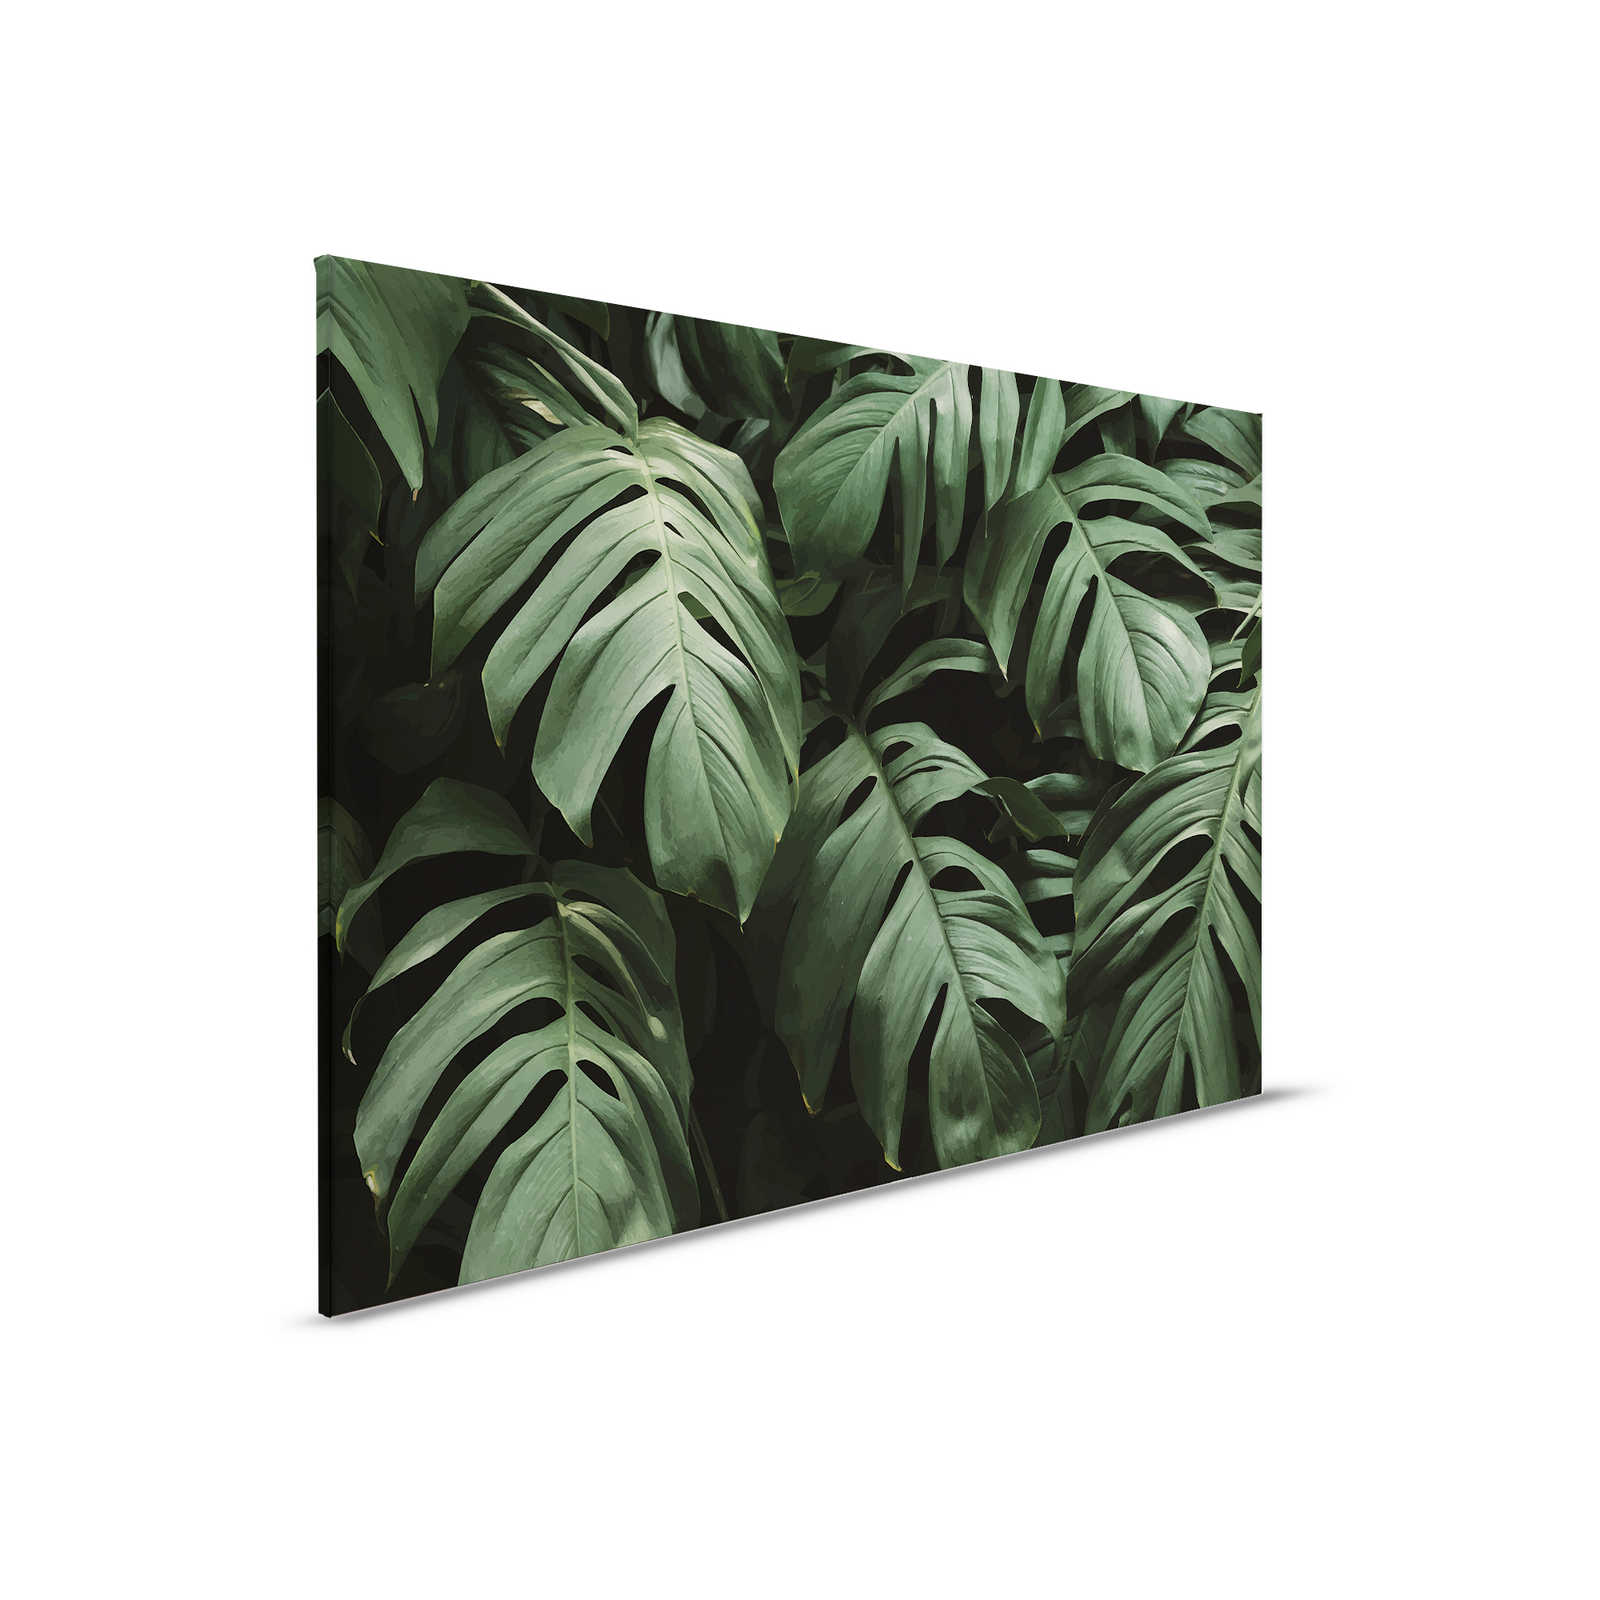 Quadro su tela con foglie della giungla tropicale in primo piano - 0,90 m x 0,60 m
